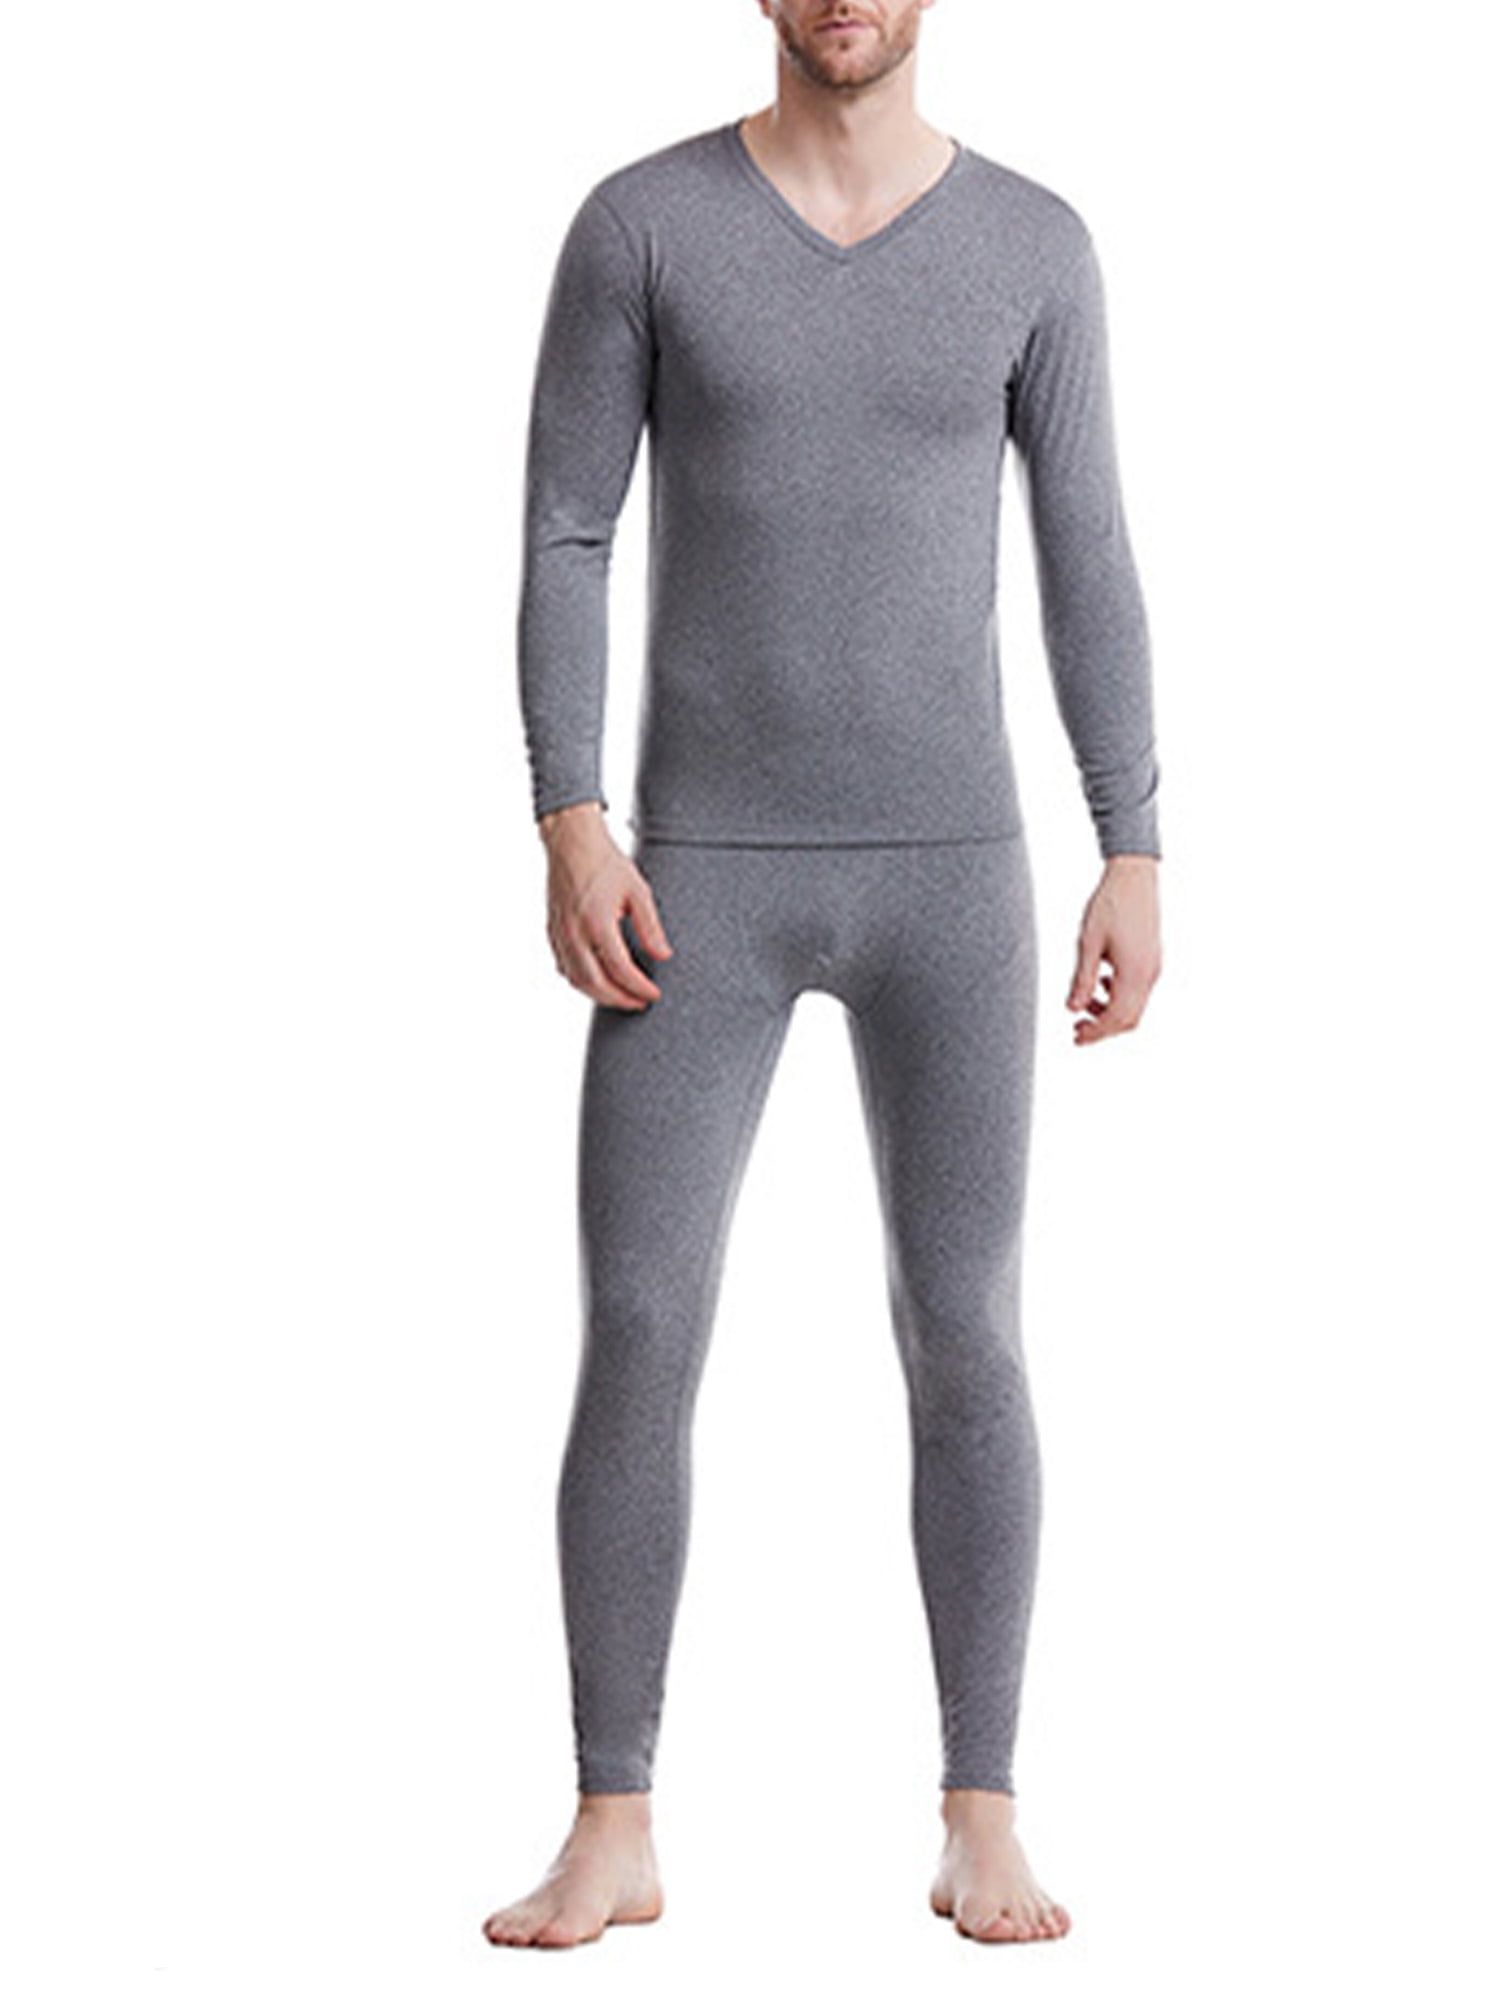 2 PCS/Set Men Winter Fleece Underwear Thermal Motorcycle Warm Shirts Sportswear 